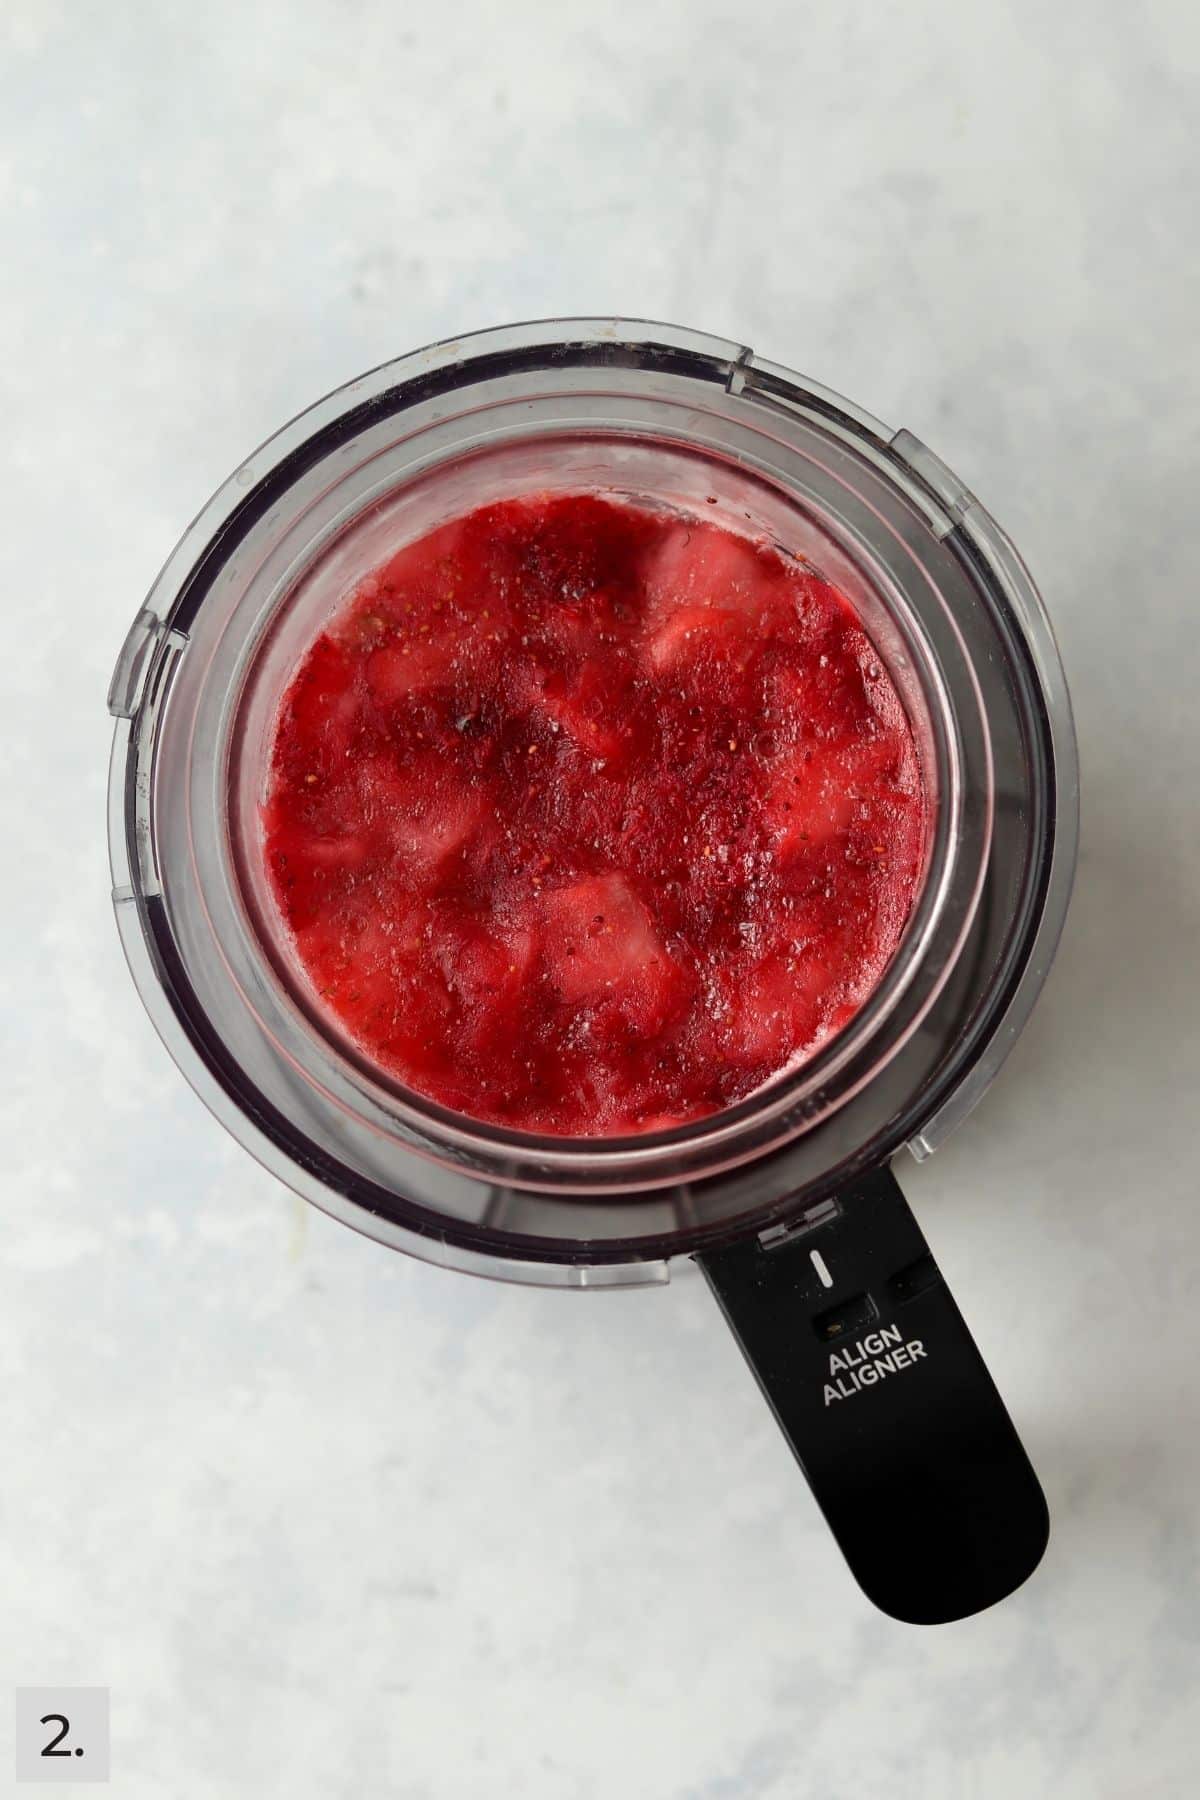 Frozen mixed berry sorbet in Ninja Creami before blending.